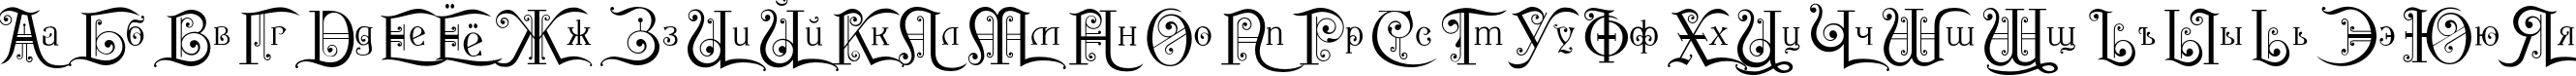 Пример написания русского алфавита шрифтом P22 Kilkenny Initial Cap